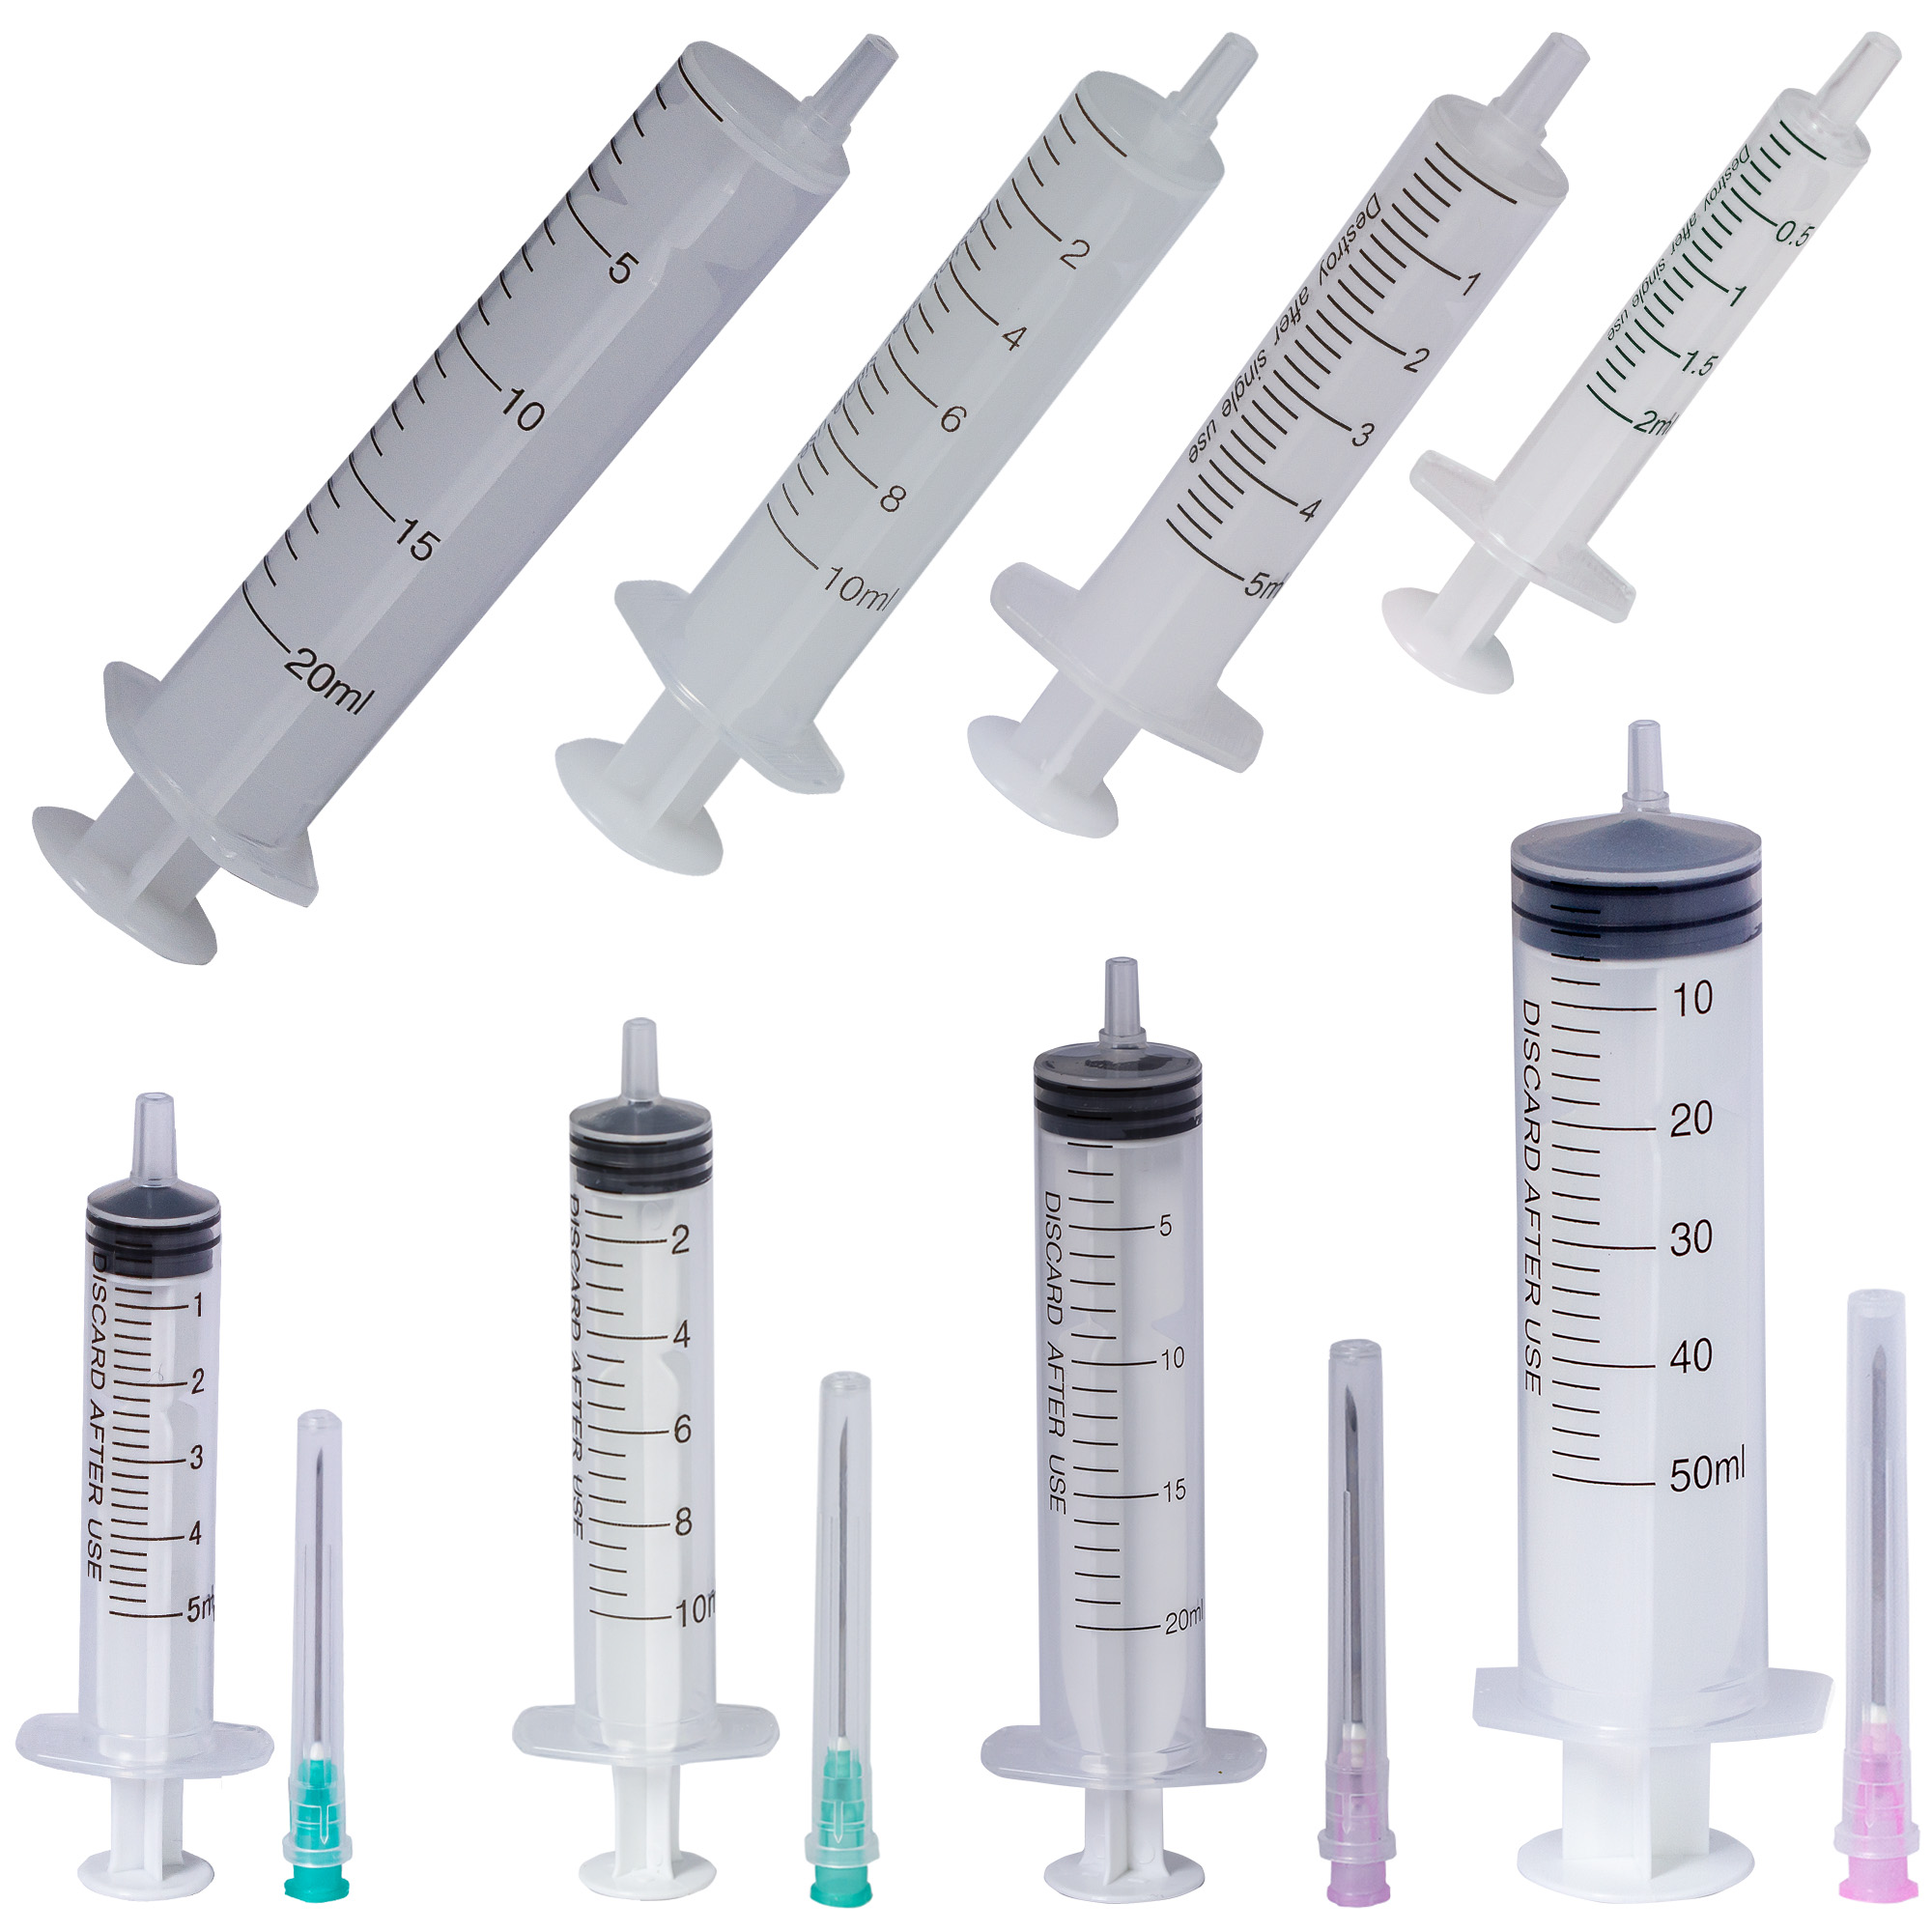 Medical practice/SYRINGES AND MEDICAL NEEDLES/Luer Slip Medical Syringes